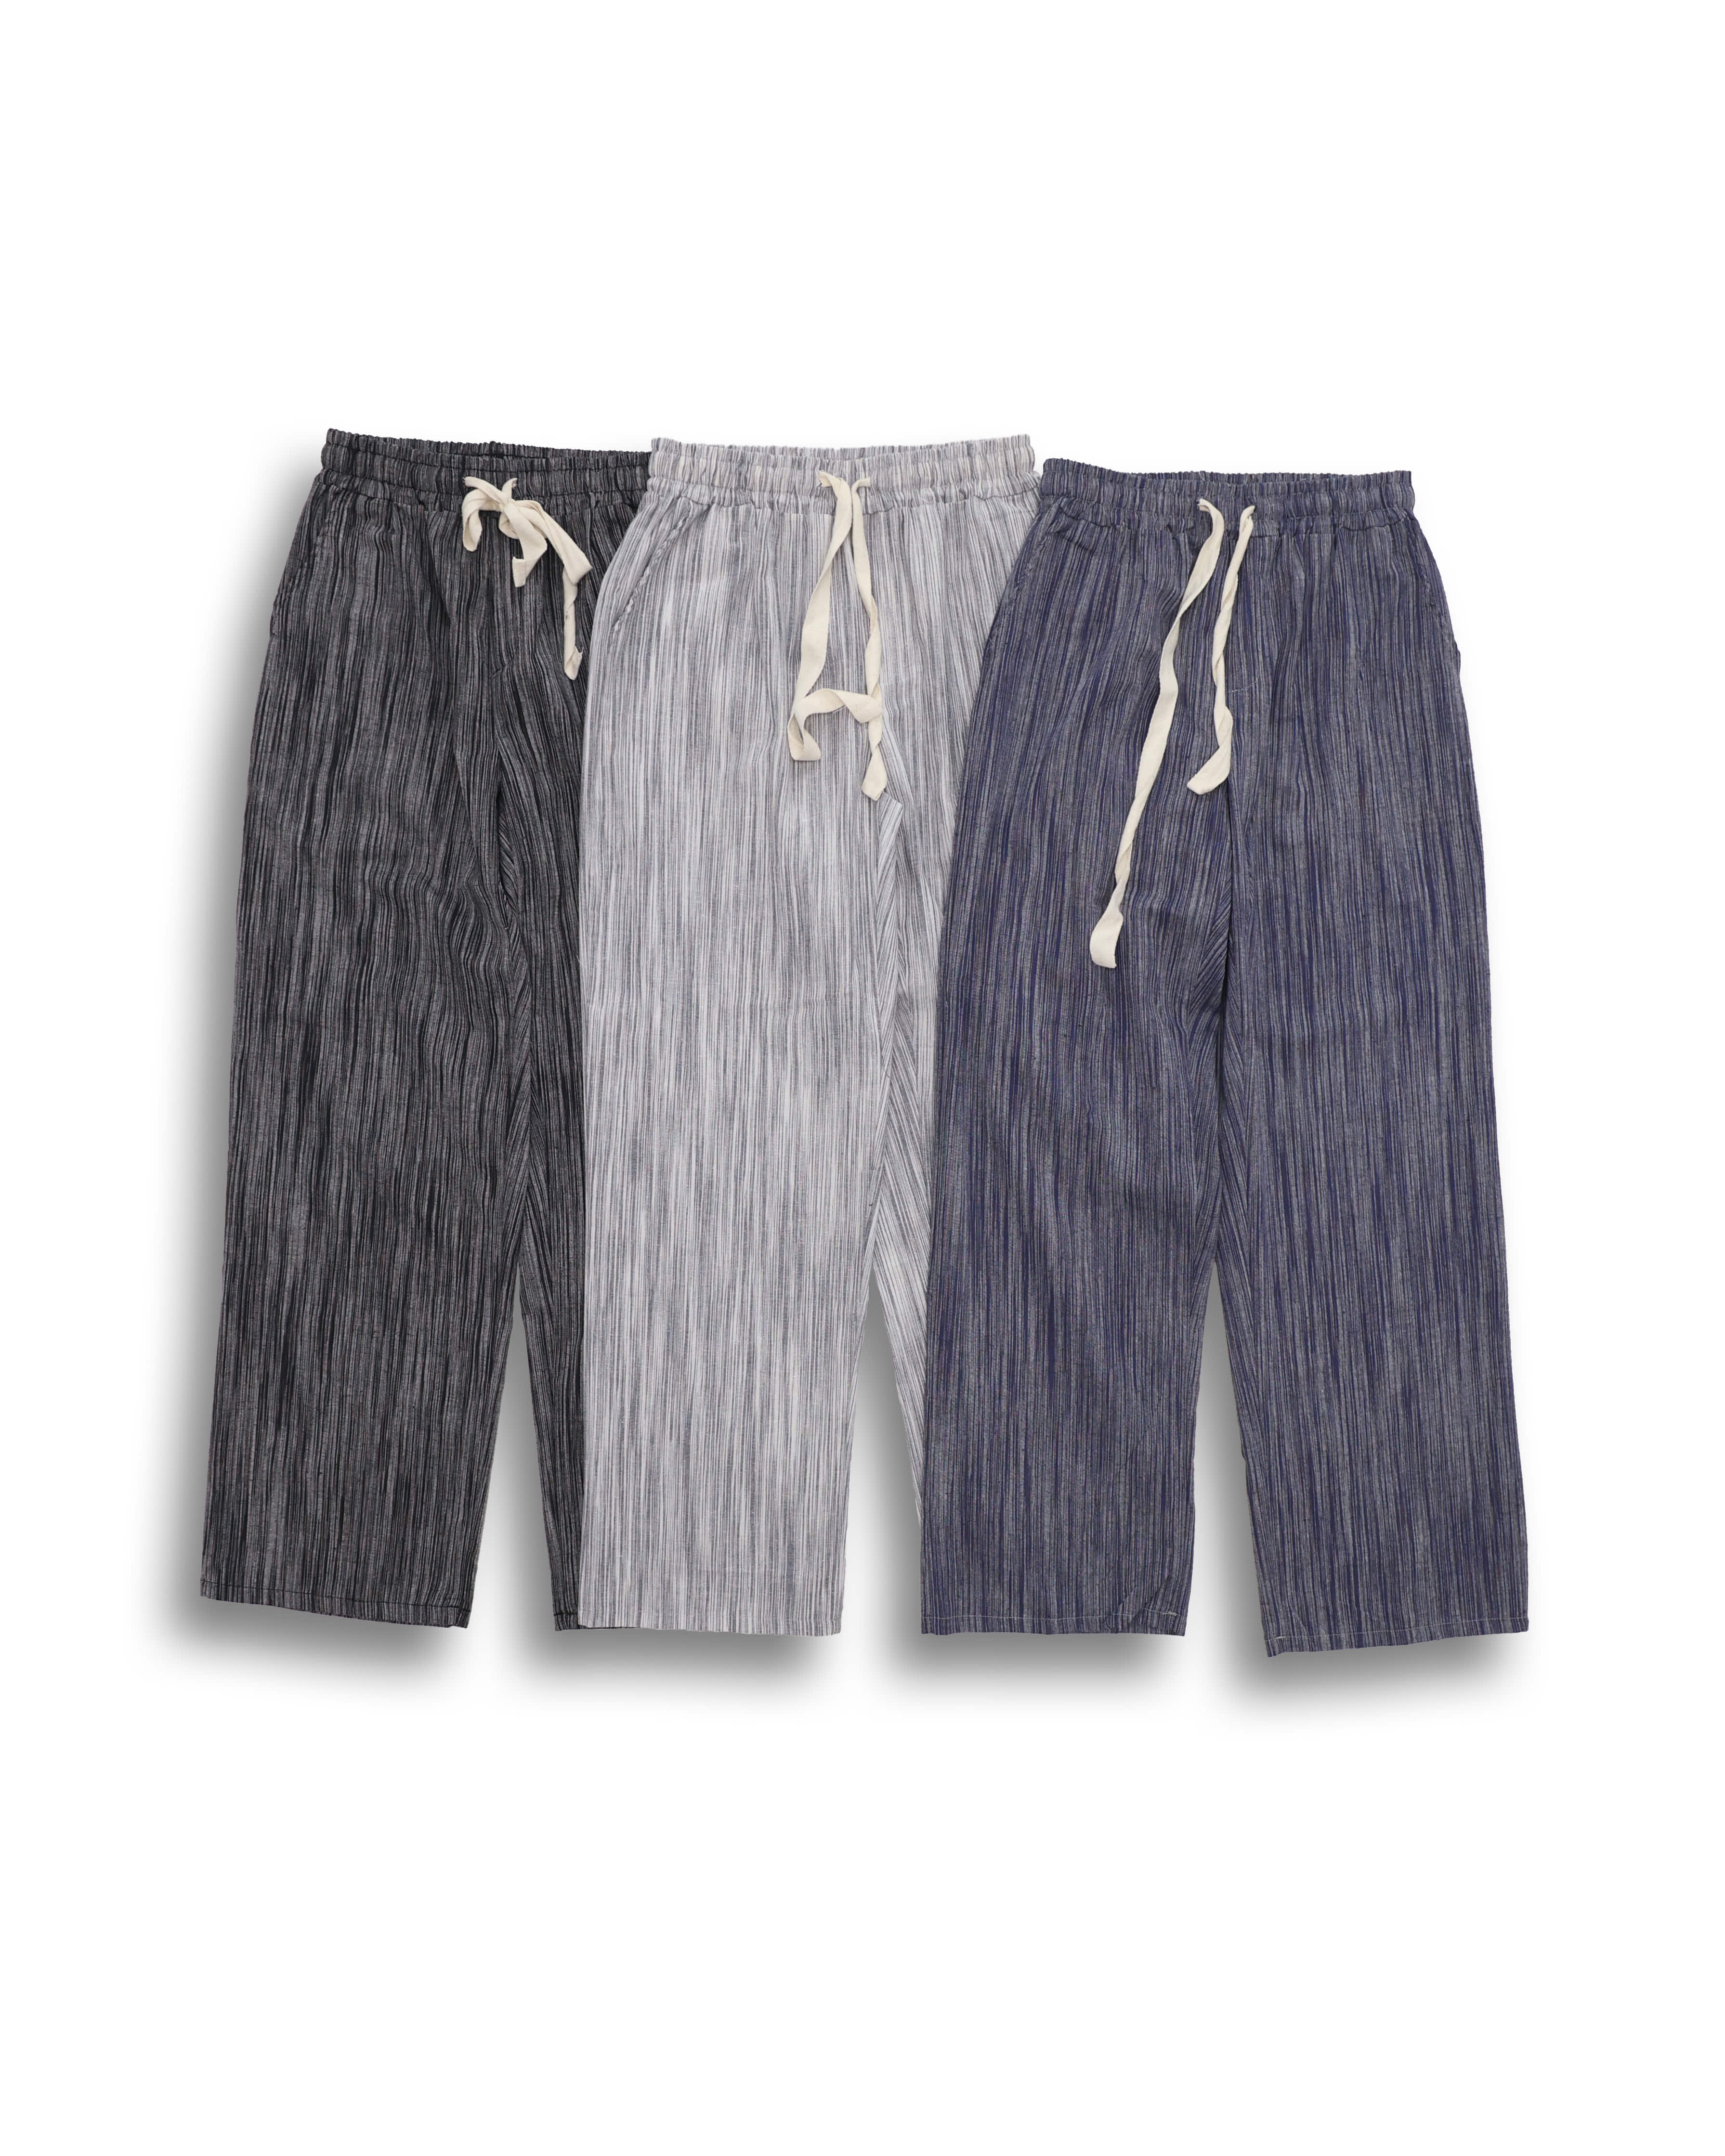 GROSS Linen Stripe Wide Pleats Pants (Black/Gray/Blue) - 7차 리오더 (5/20 배송예정)